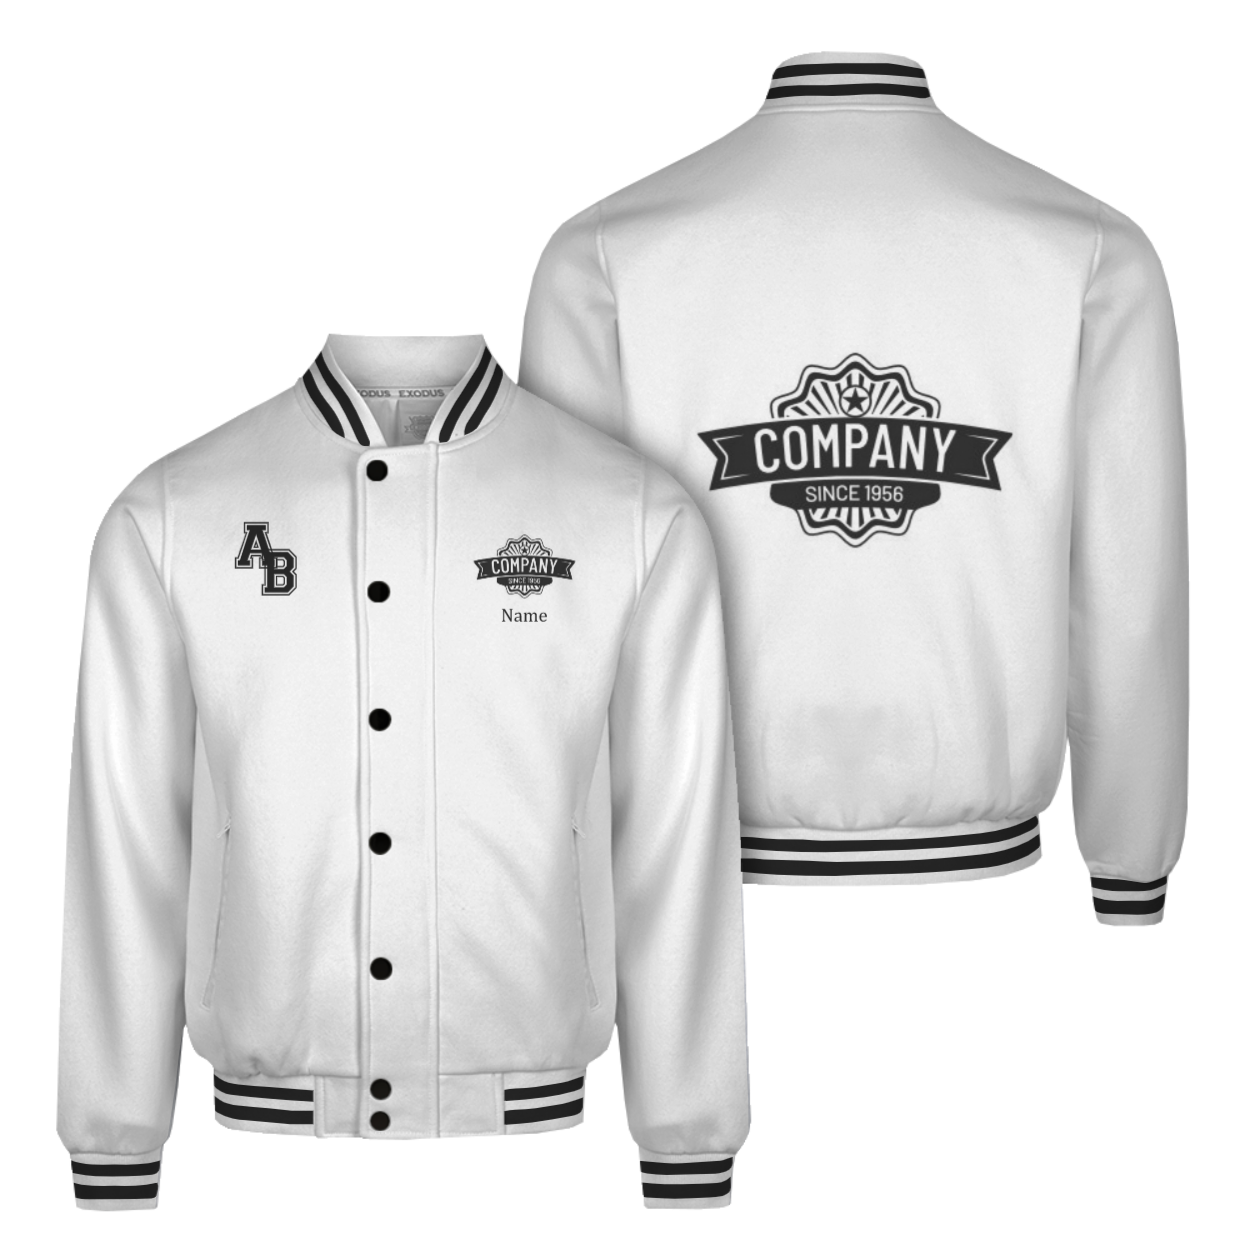 Design A Custom Varsity Jacket Online Order Free Sample Of Your Design